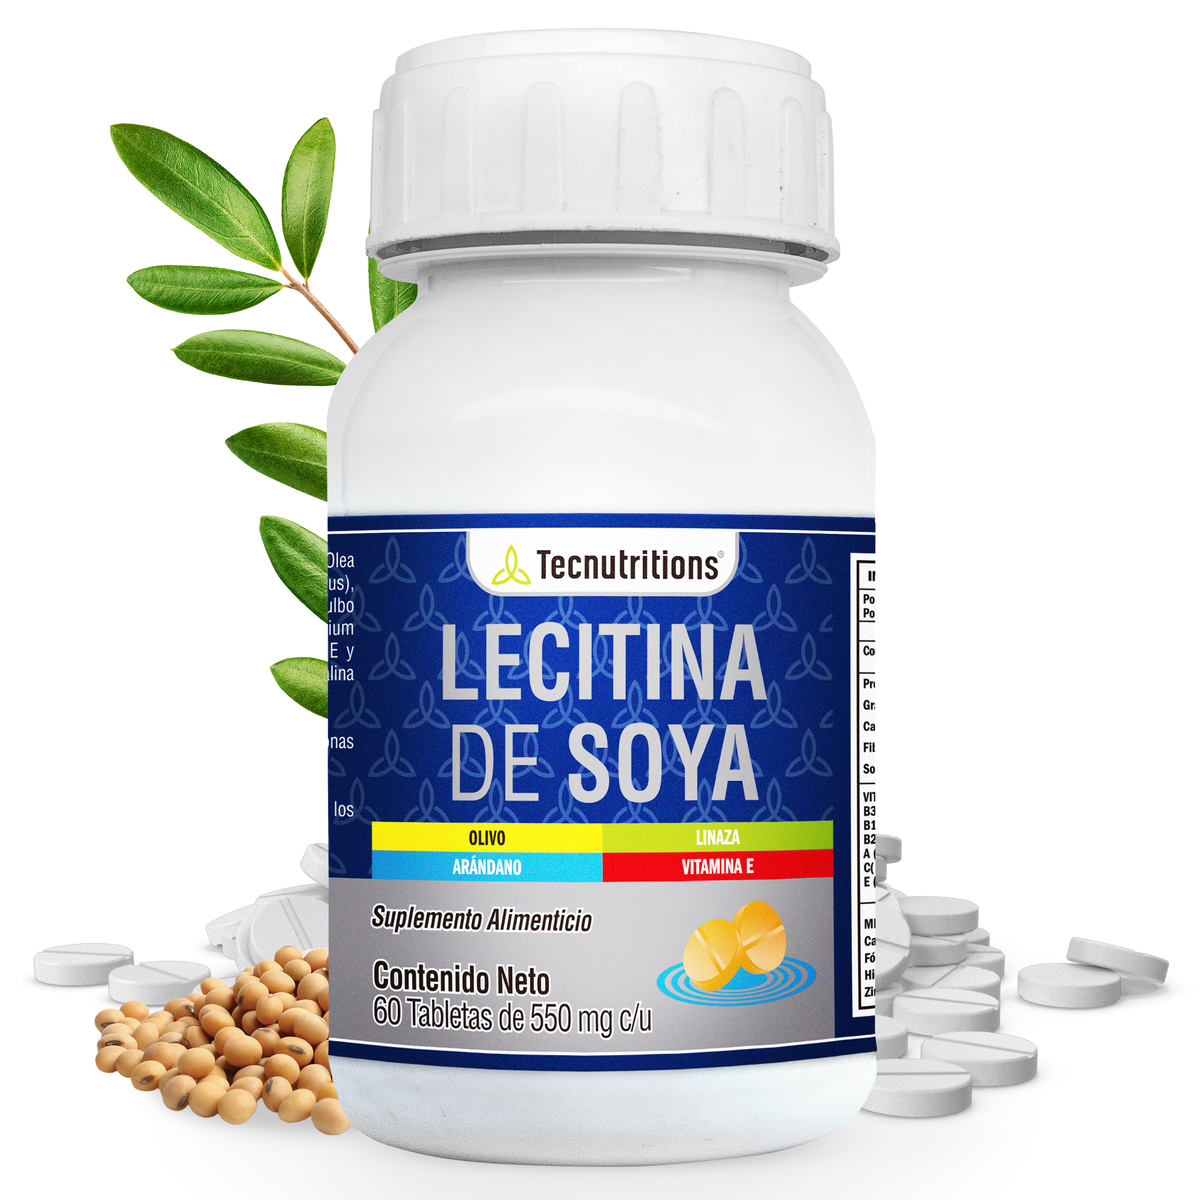 Suplemento alimenticio Lecitina de Soya, 60 tabs, con lecitina de soya, olivo, arándano, apoyo cardiovascular